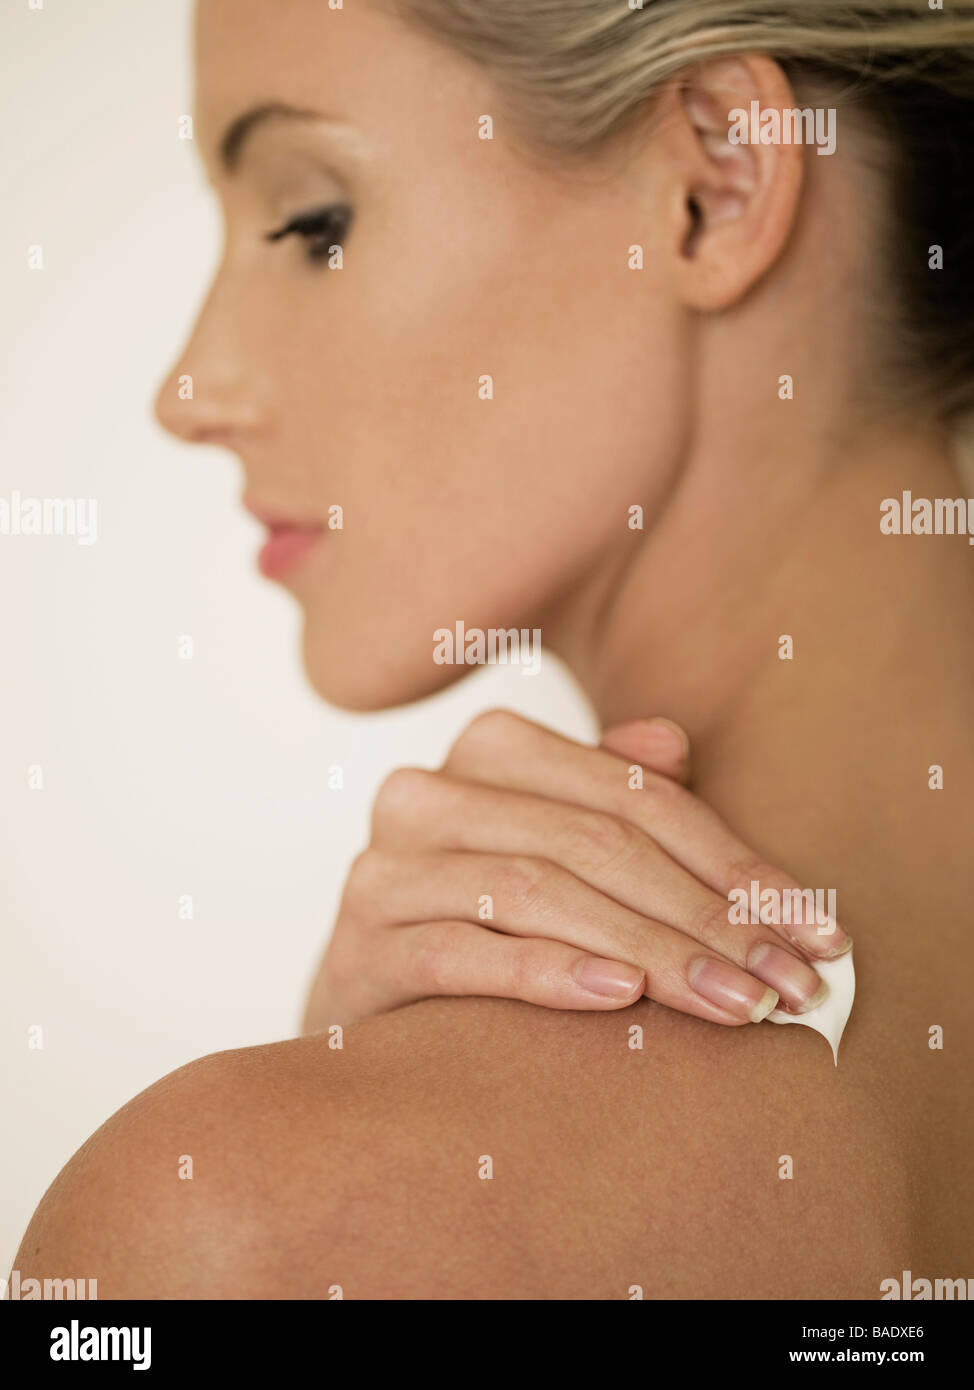 female face in profile rubbing cream into shoulder Stock Photo